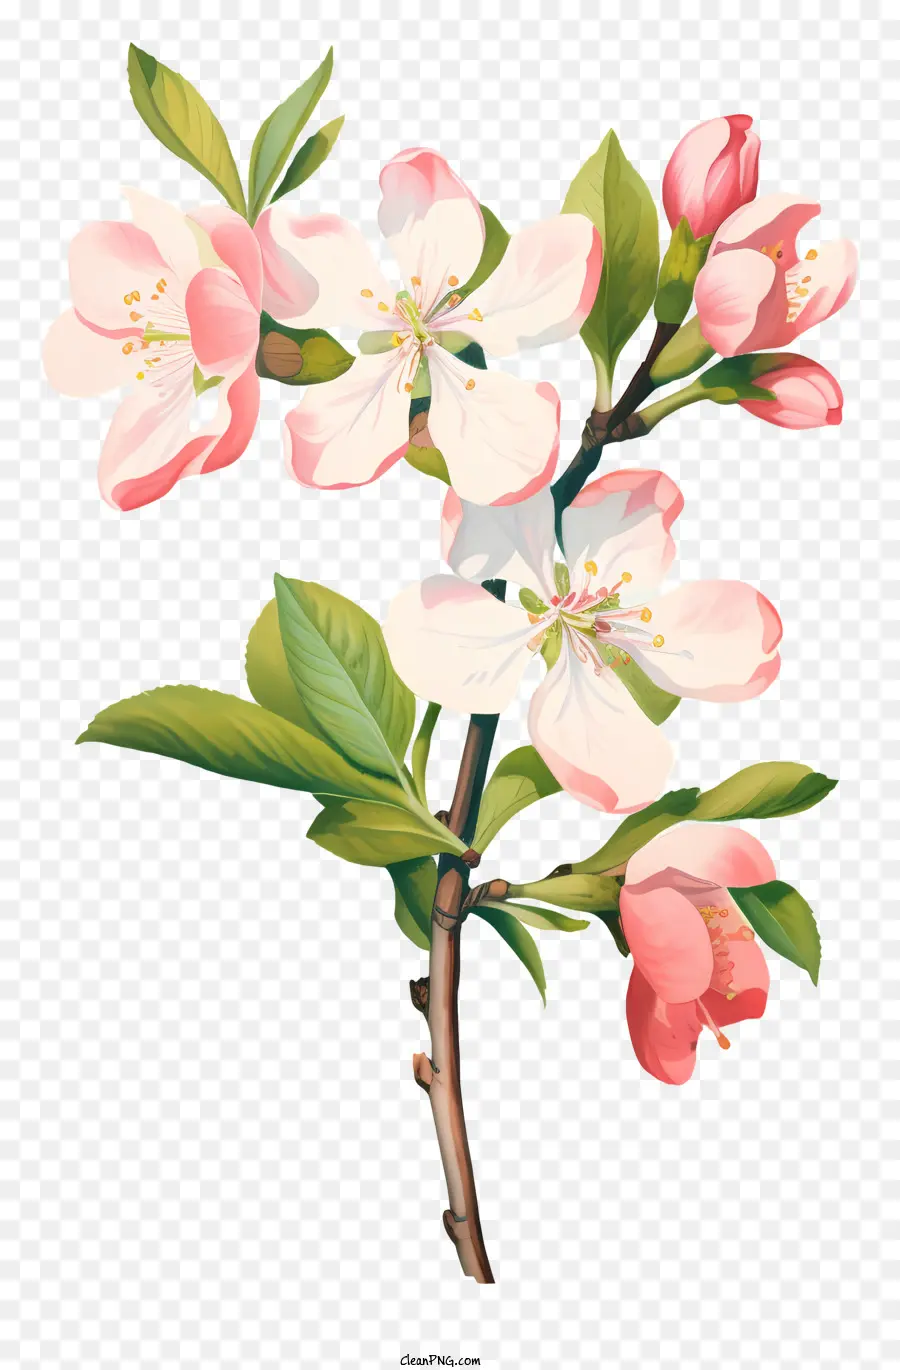 Apfelbaum - Blühender Apfelbaum mit rosa Blüten und grünen Äpfeln